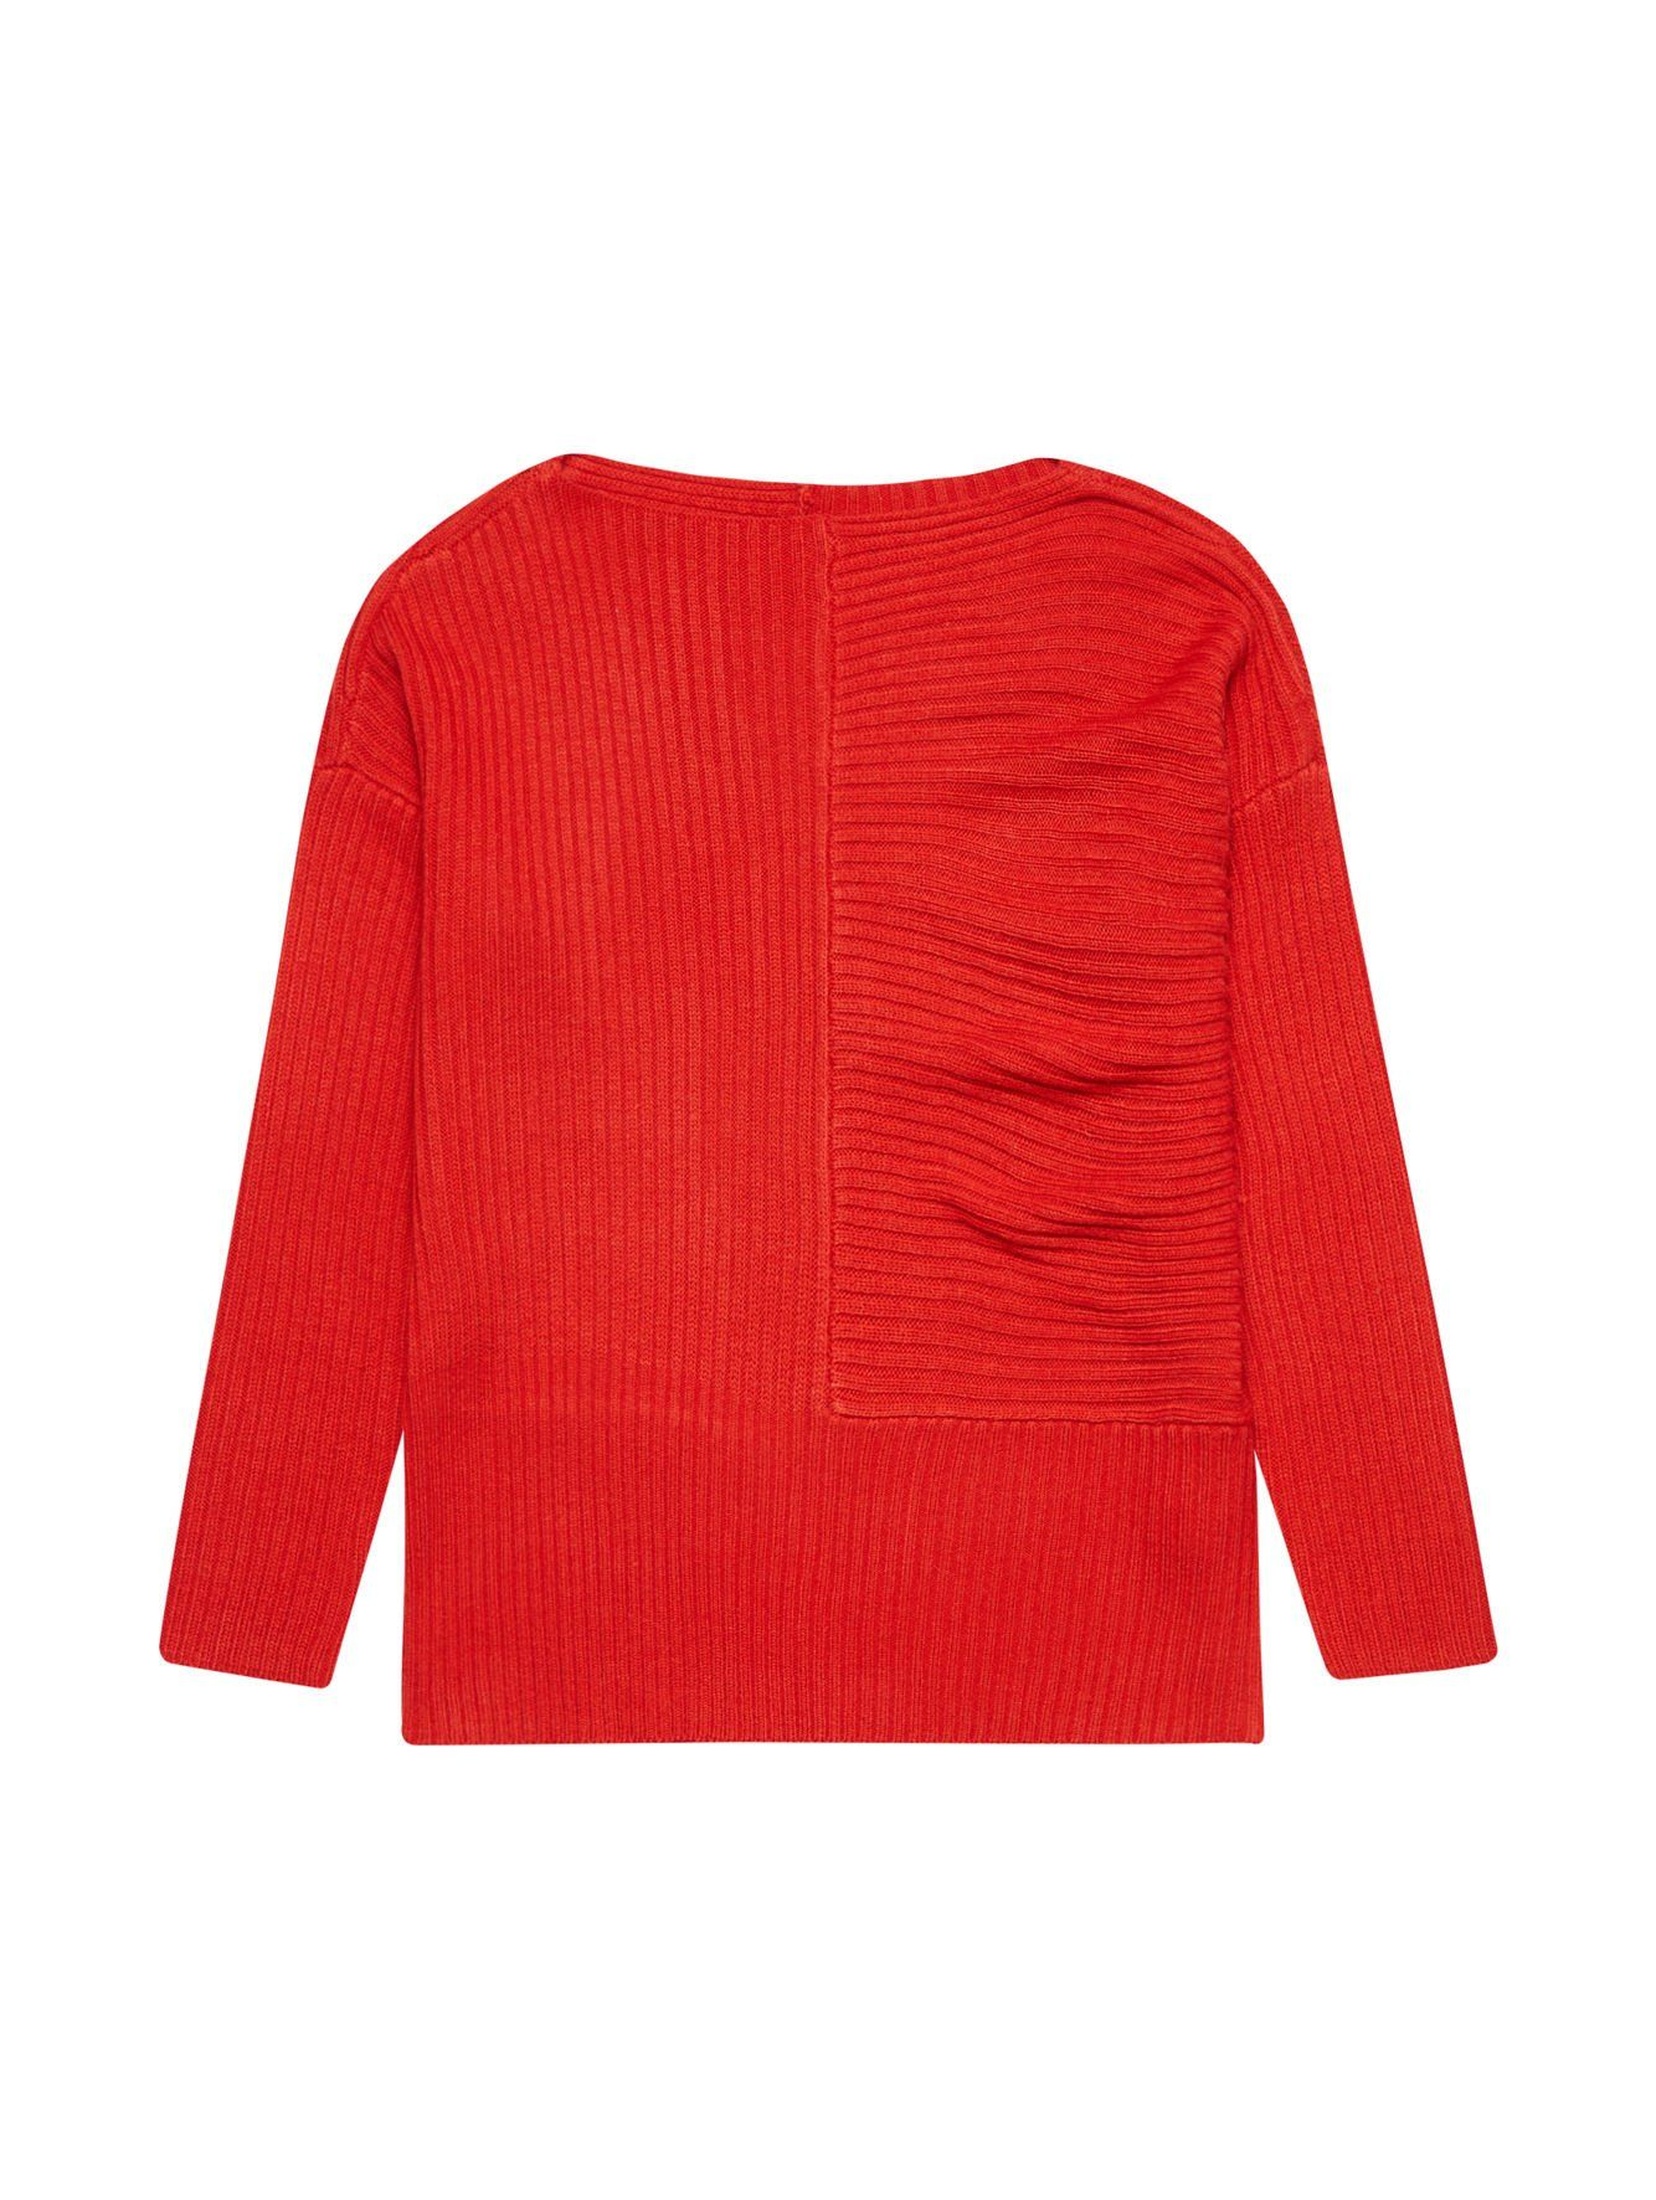 Czerwony sweter damski- luźny krój